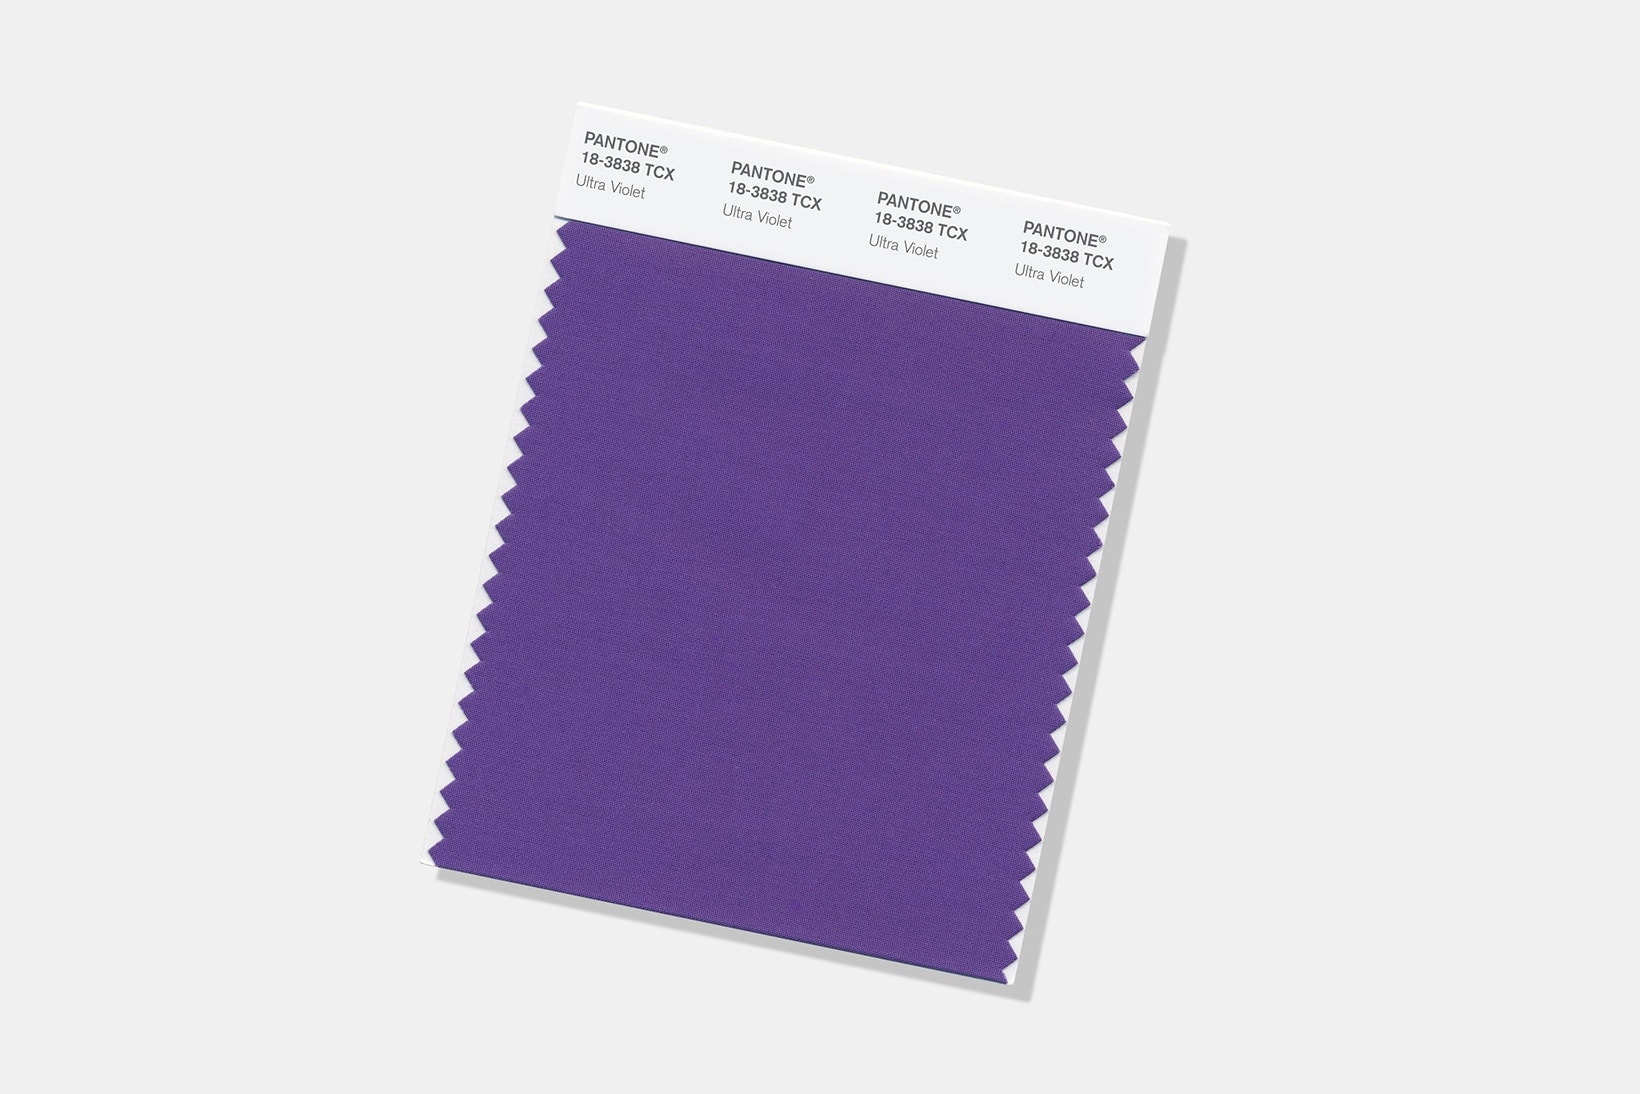 色の権威 Pantone が2018年のトレンドカラーを発表 色を知り尽くした「Pantone」が“Ultra Violet（ウルトラバイオレット）”を選出した理由とは？ パントン パントーン 色彩検定  Pantone 18-3838 HYPEBEAST ハイプビースト